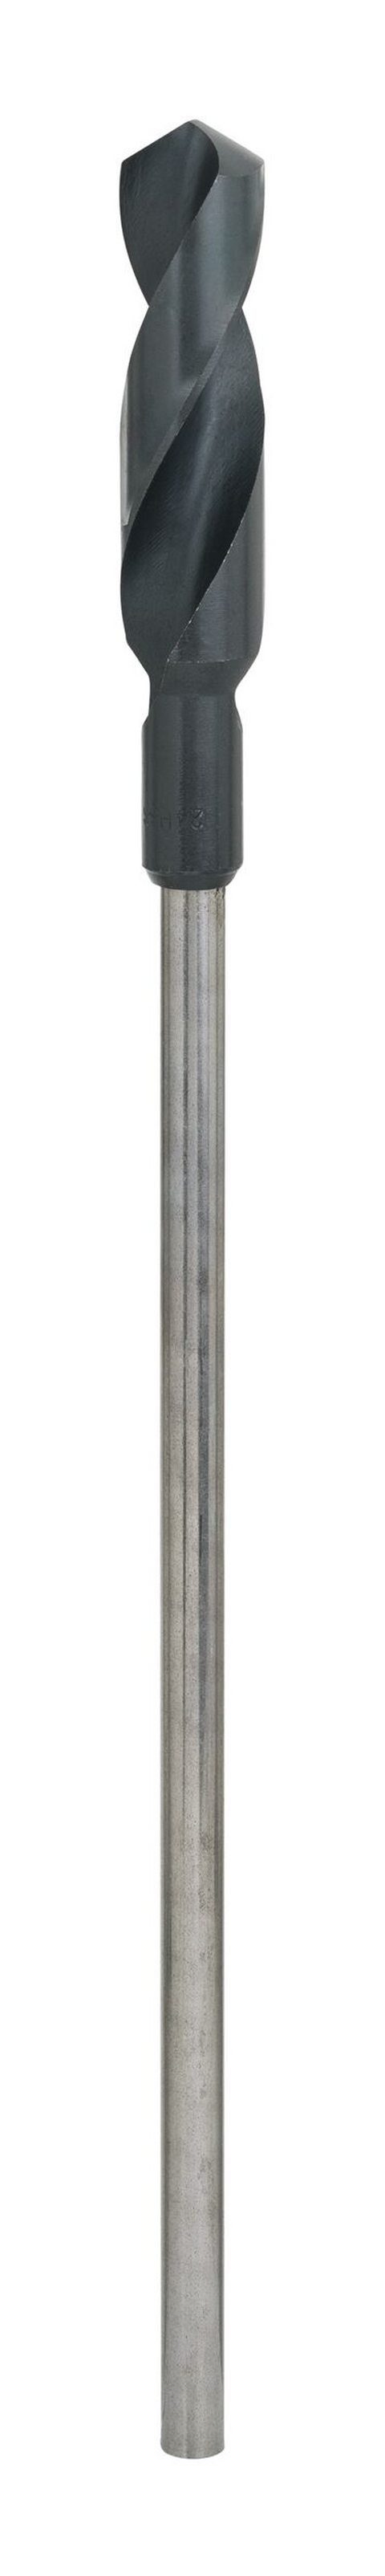 BOSCH Holzbohrer, Schalungs- und Installationsbohrer - 24 x 400 x 11 mm